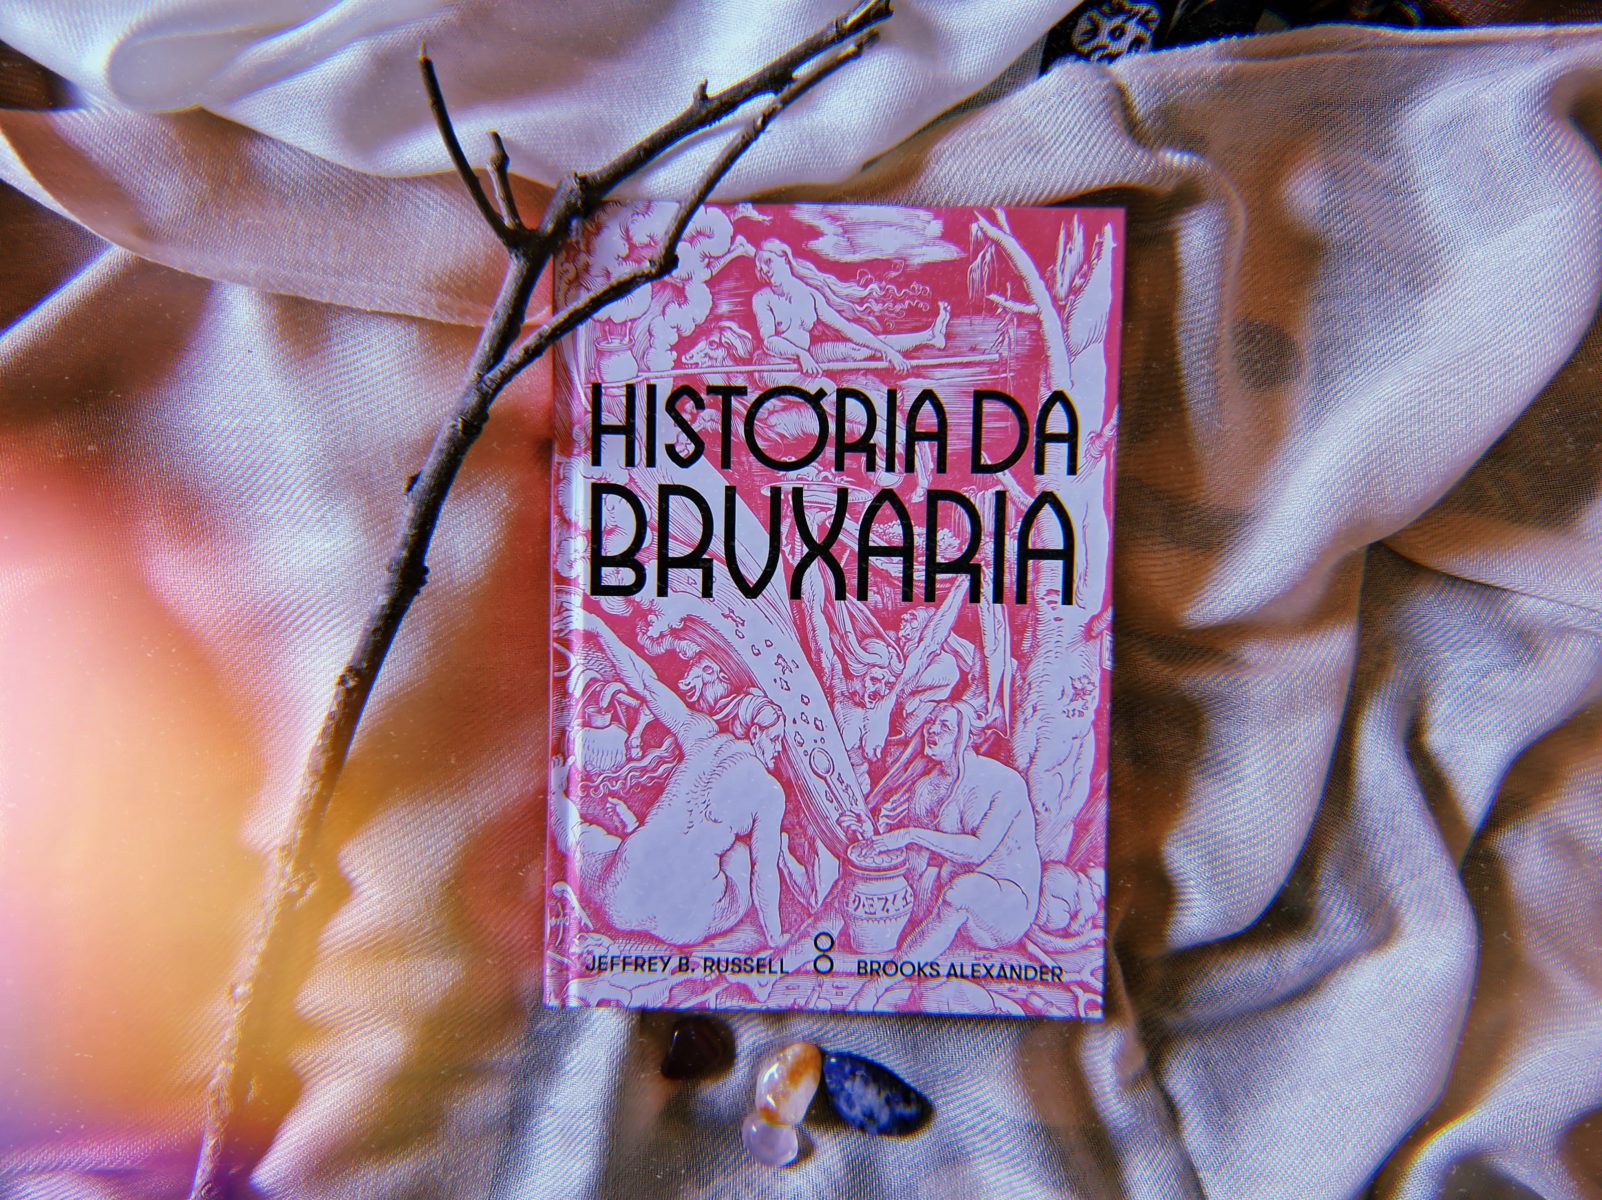 Edição do livro "História da Bruxaria", lançado pela Goya, dos autores Jeffrey B. Russell e Brooks Alexander.